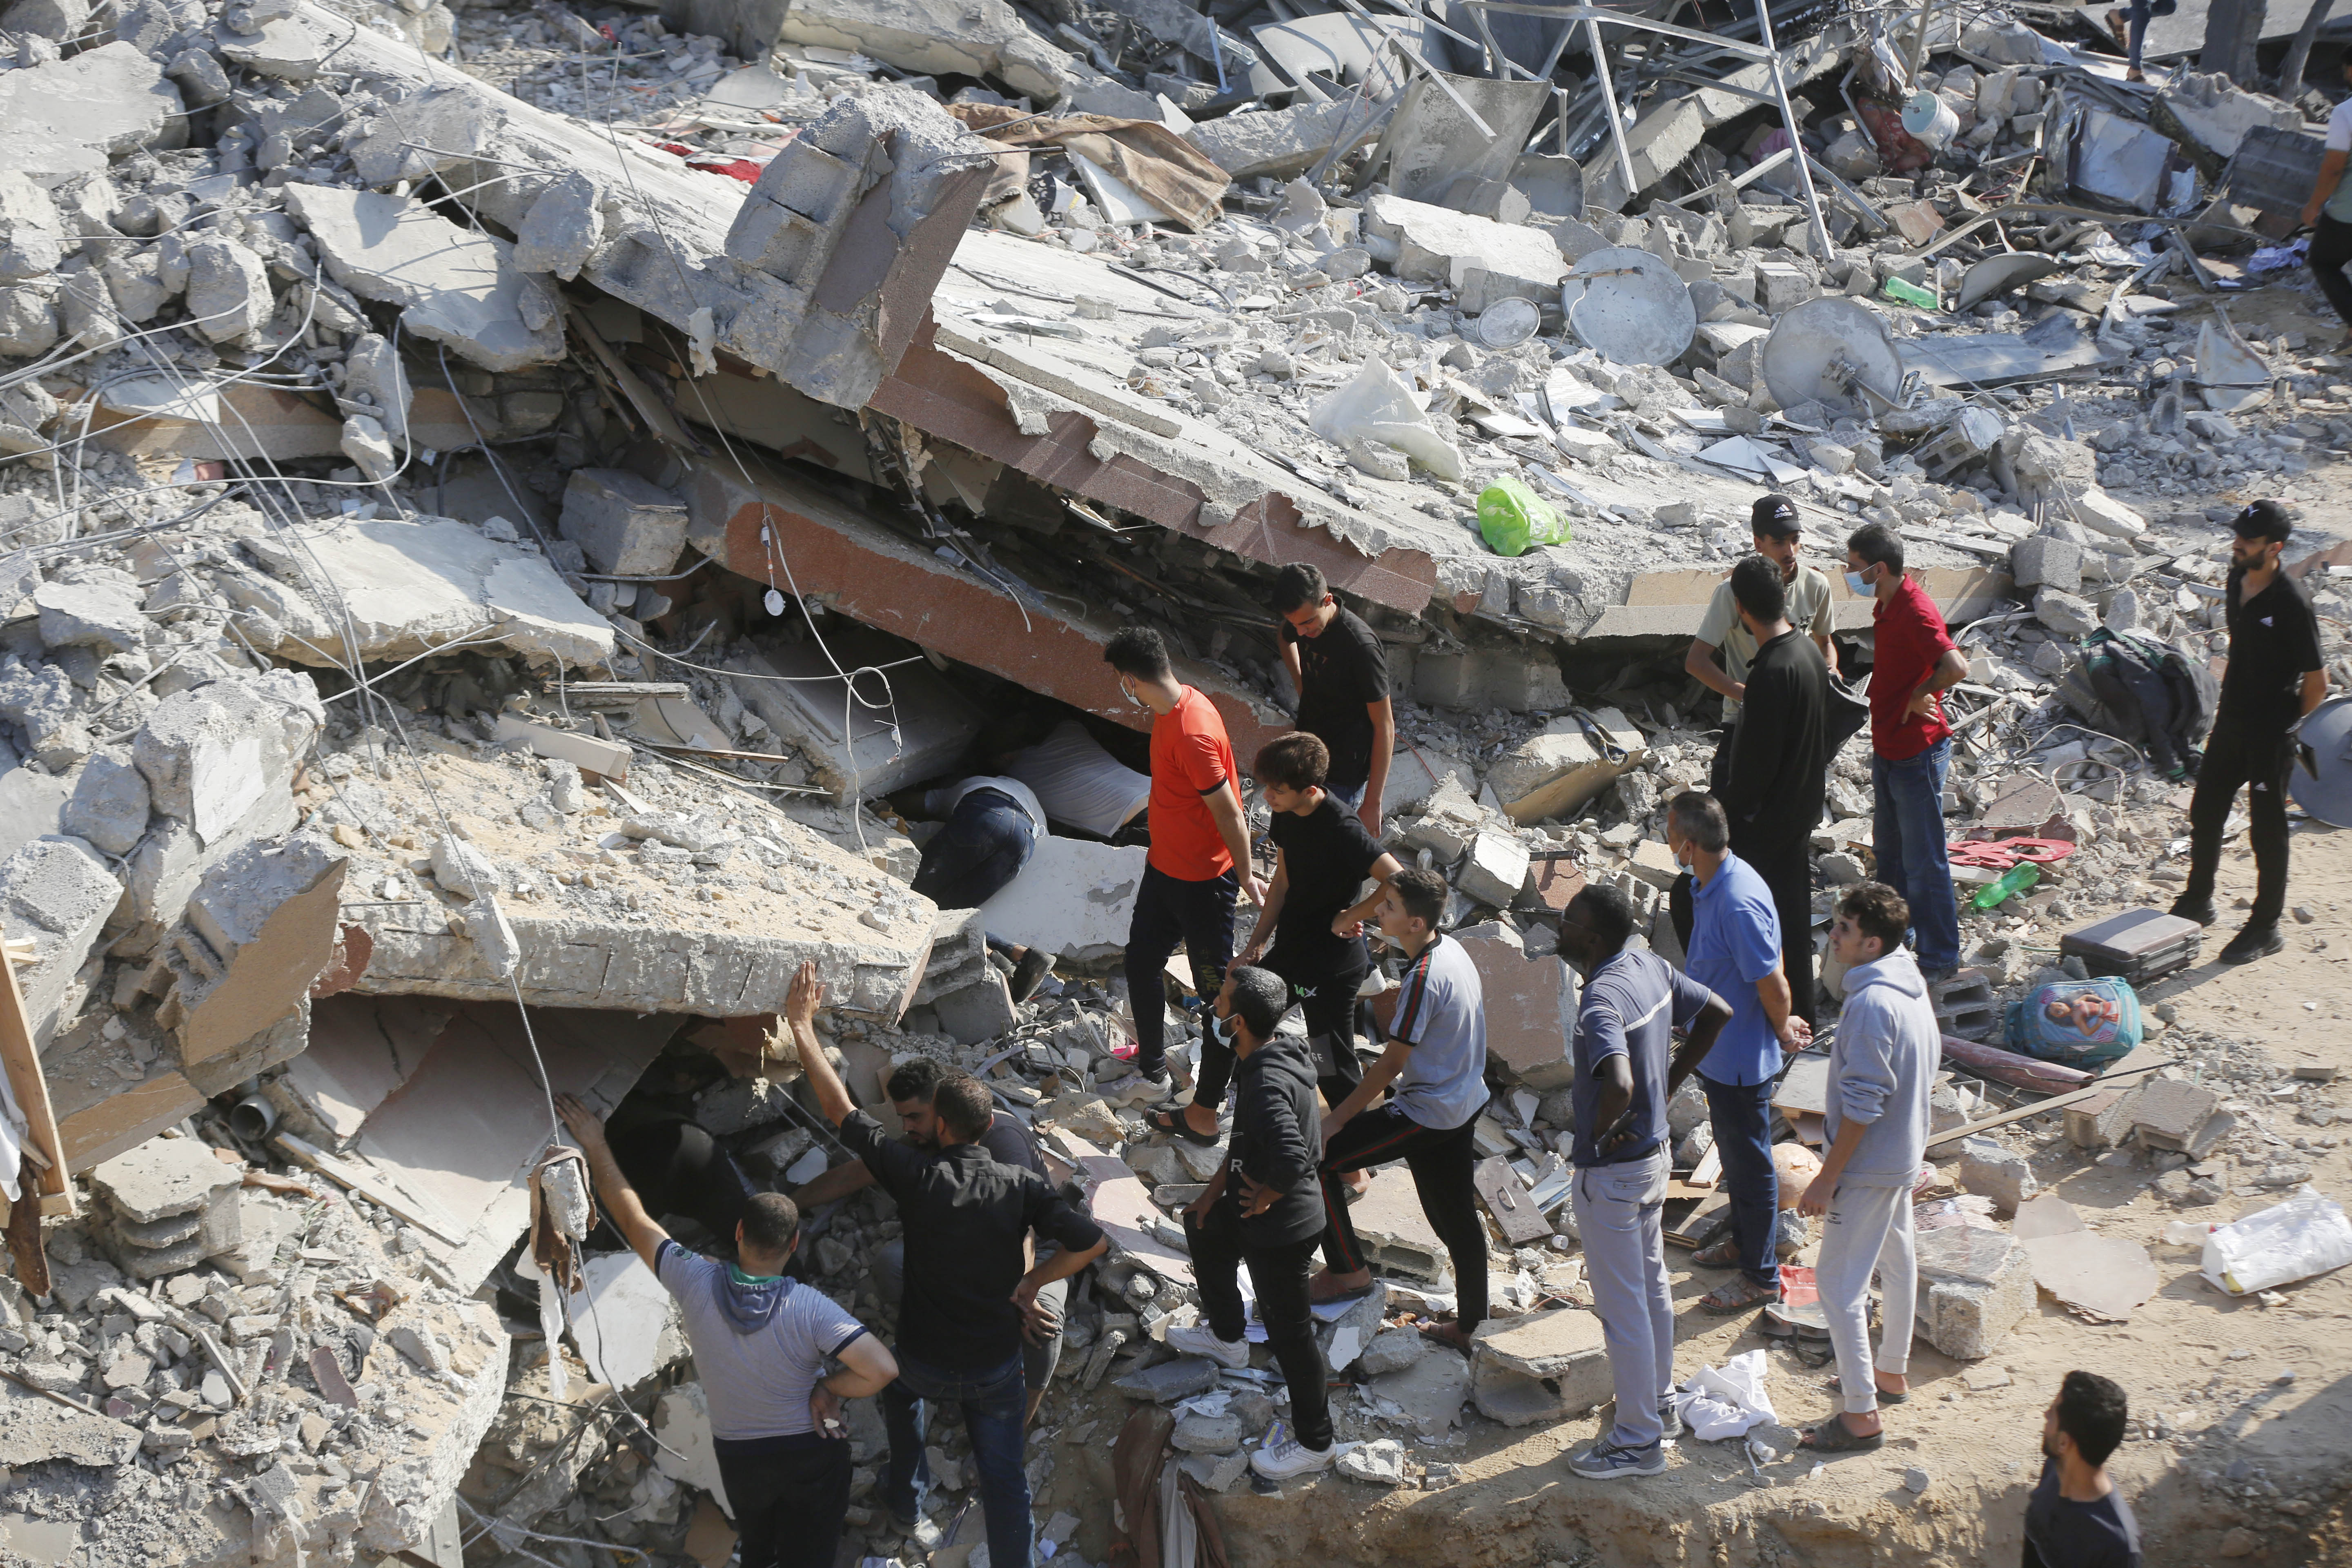 شاهد صور لخراب ودمار واسع في جباليا جراء القصف الإسرائيلي